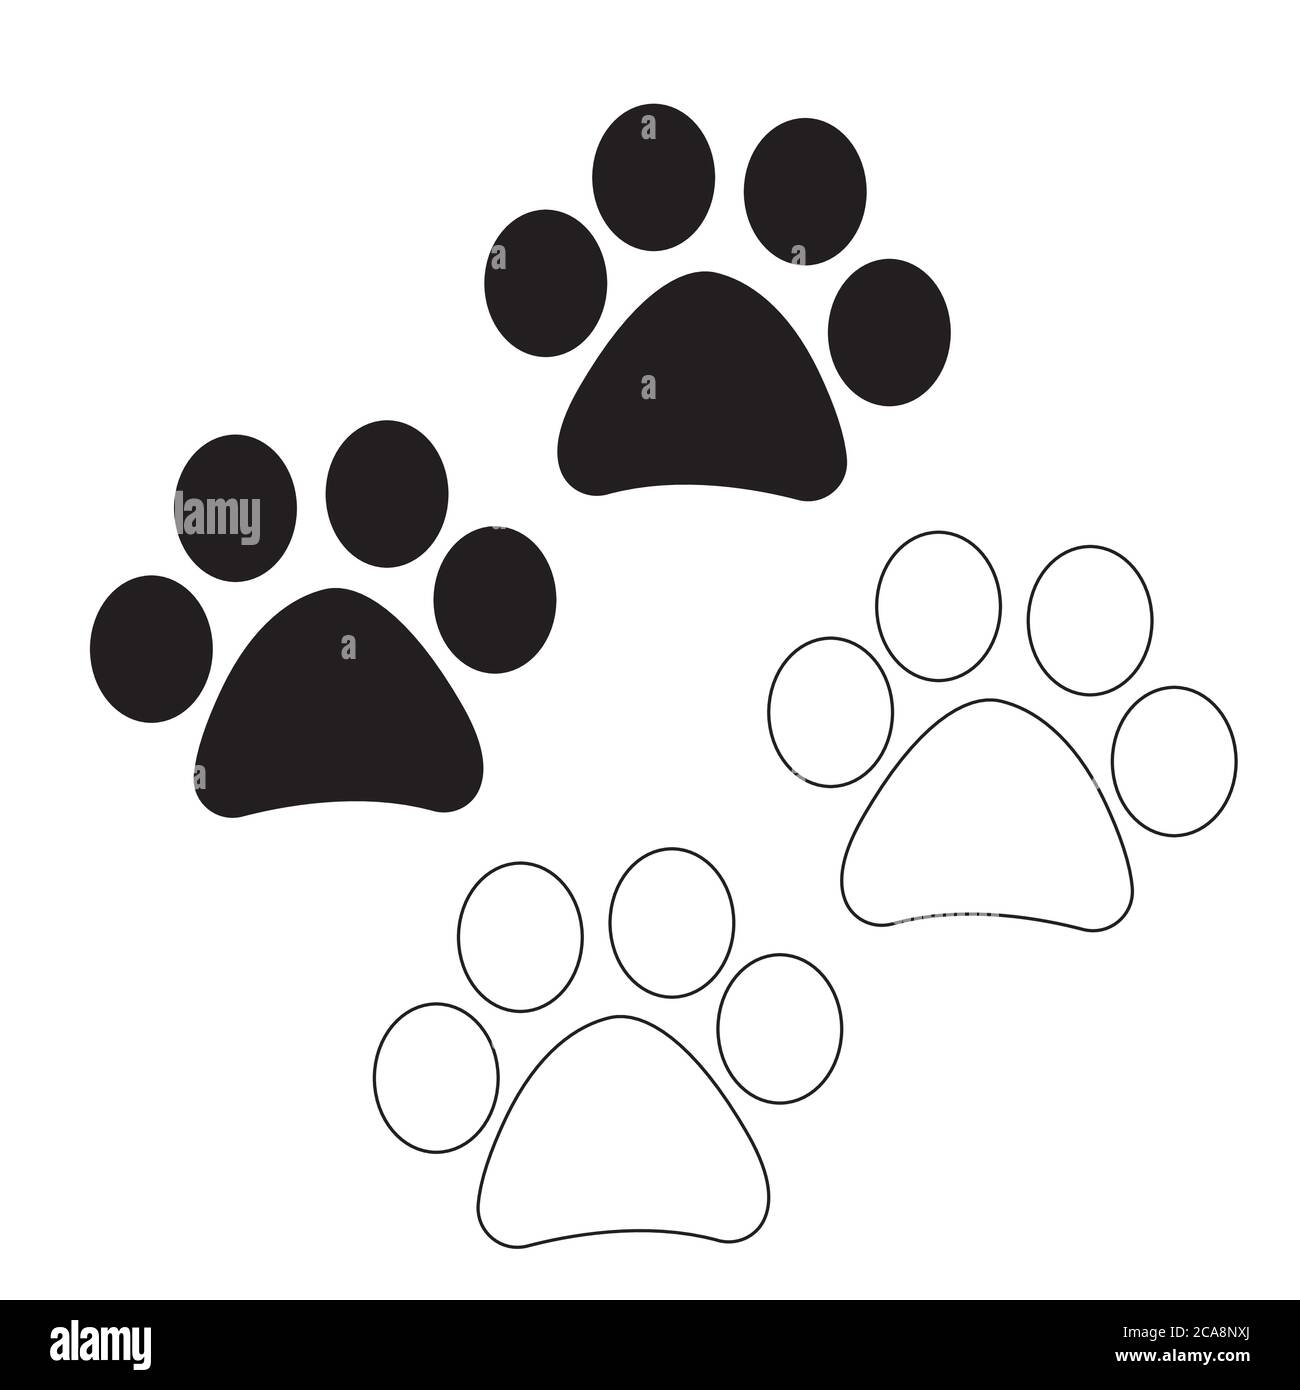 Icono de la pata de perro fotografías e imágenes de alta resolución -  Página 4 - Alamy